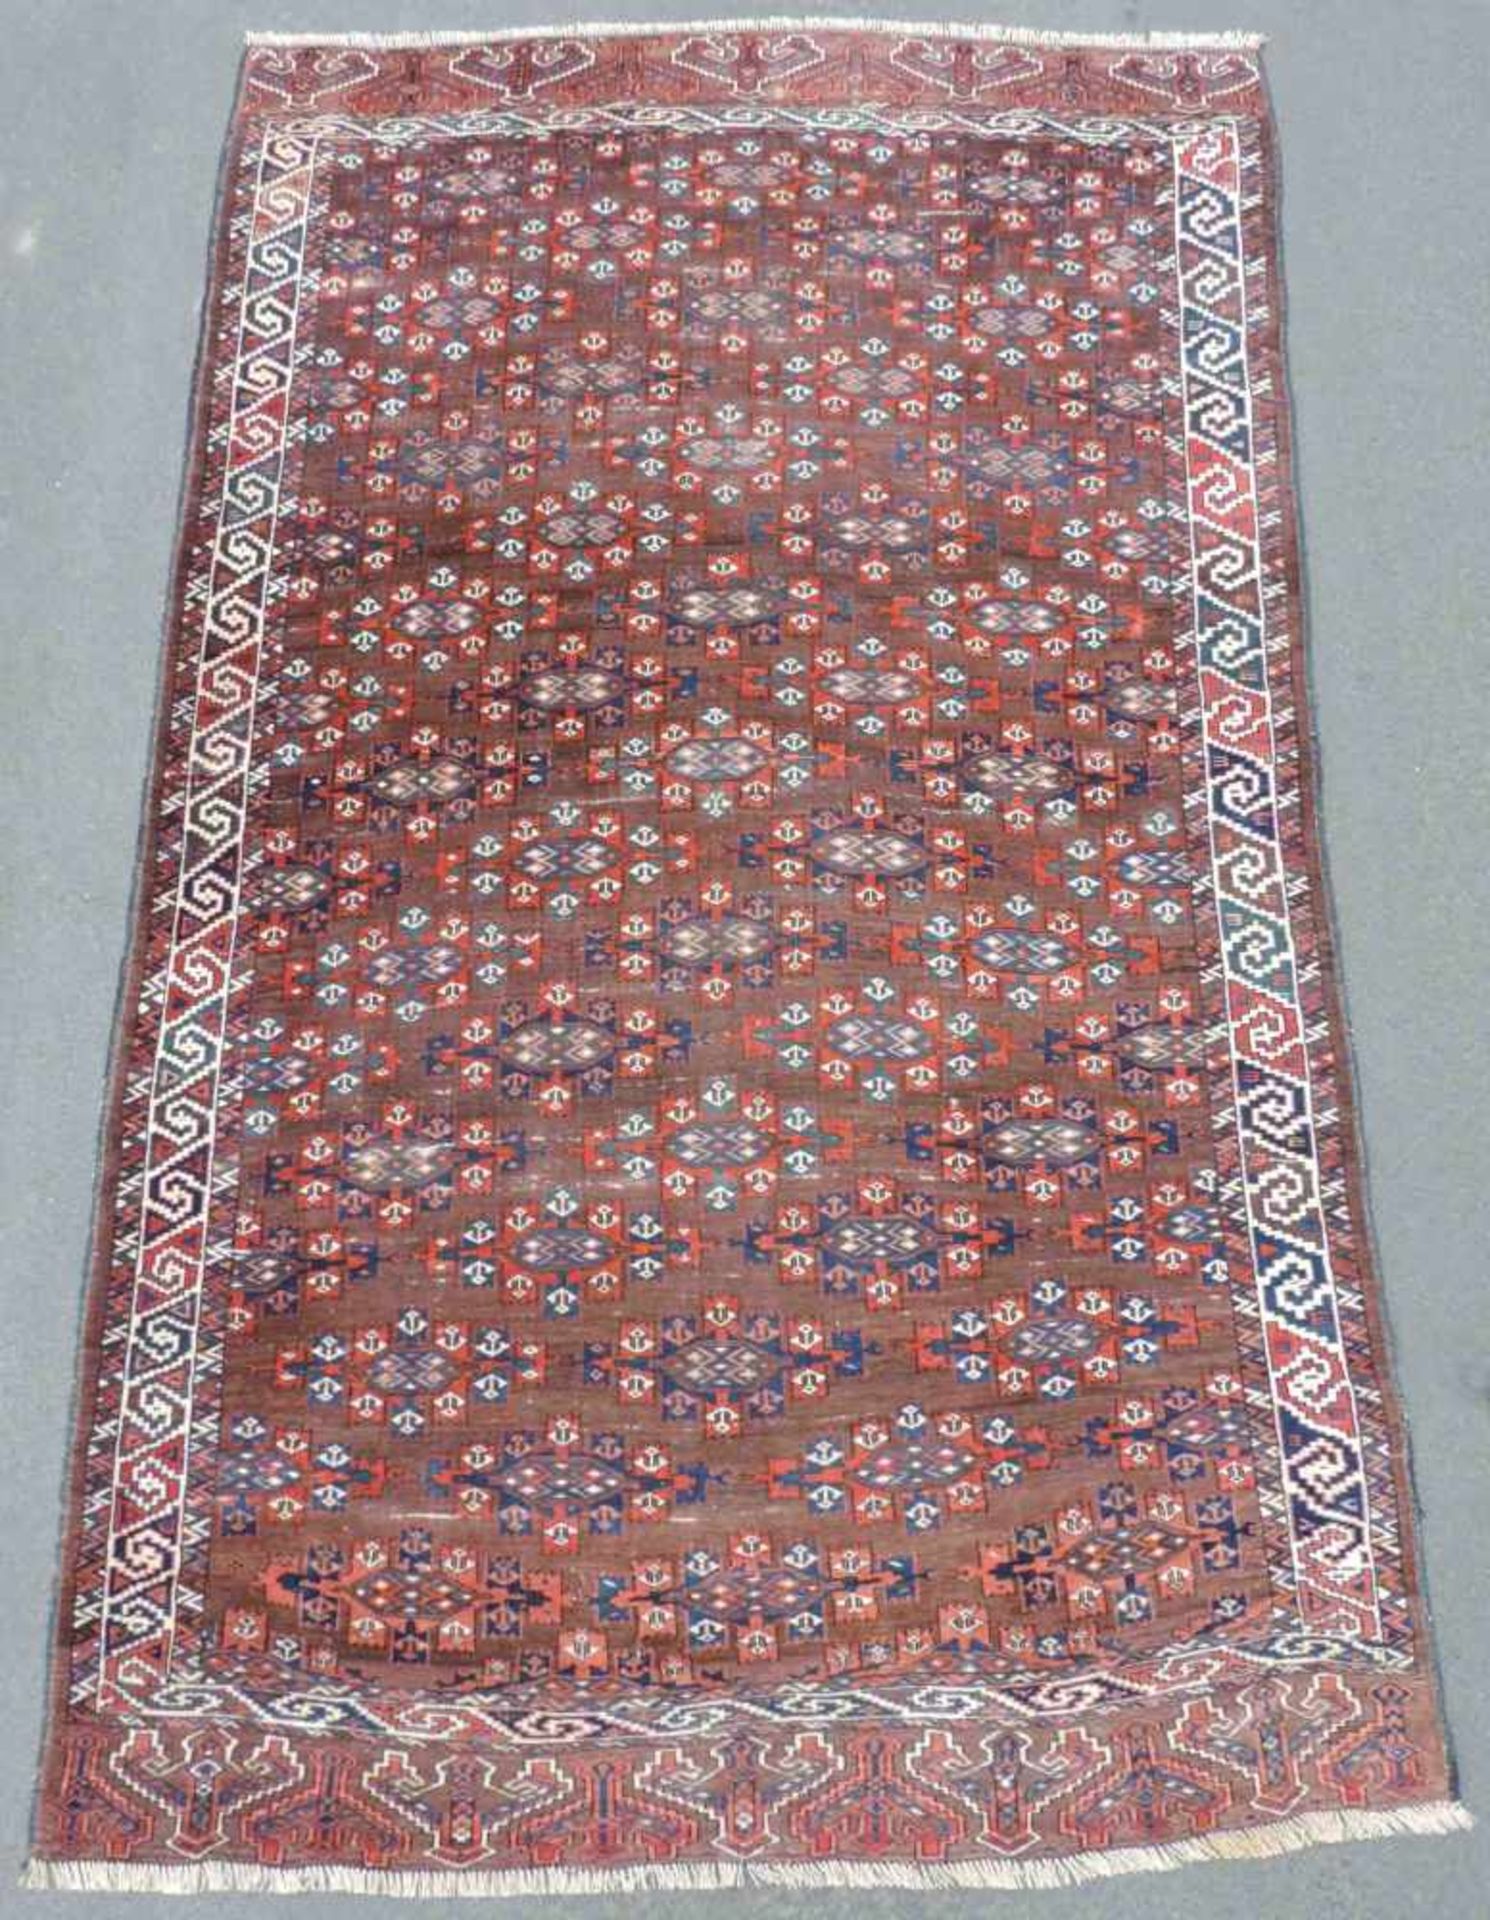 Jomud Hauptteppich. Turkmenistan. Antik, um 1900. 318 cm x 186 cm. Stammesteppich, handgeknüpft.